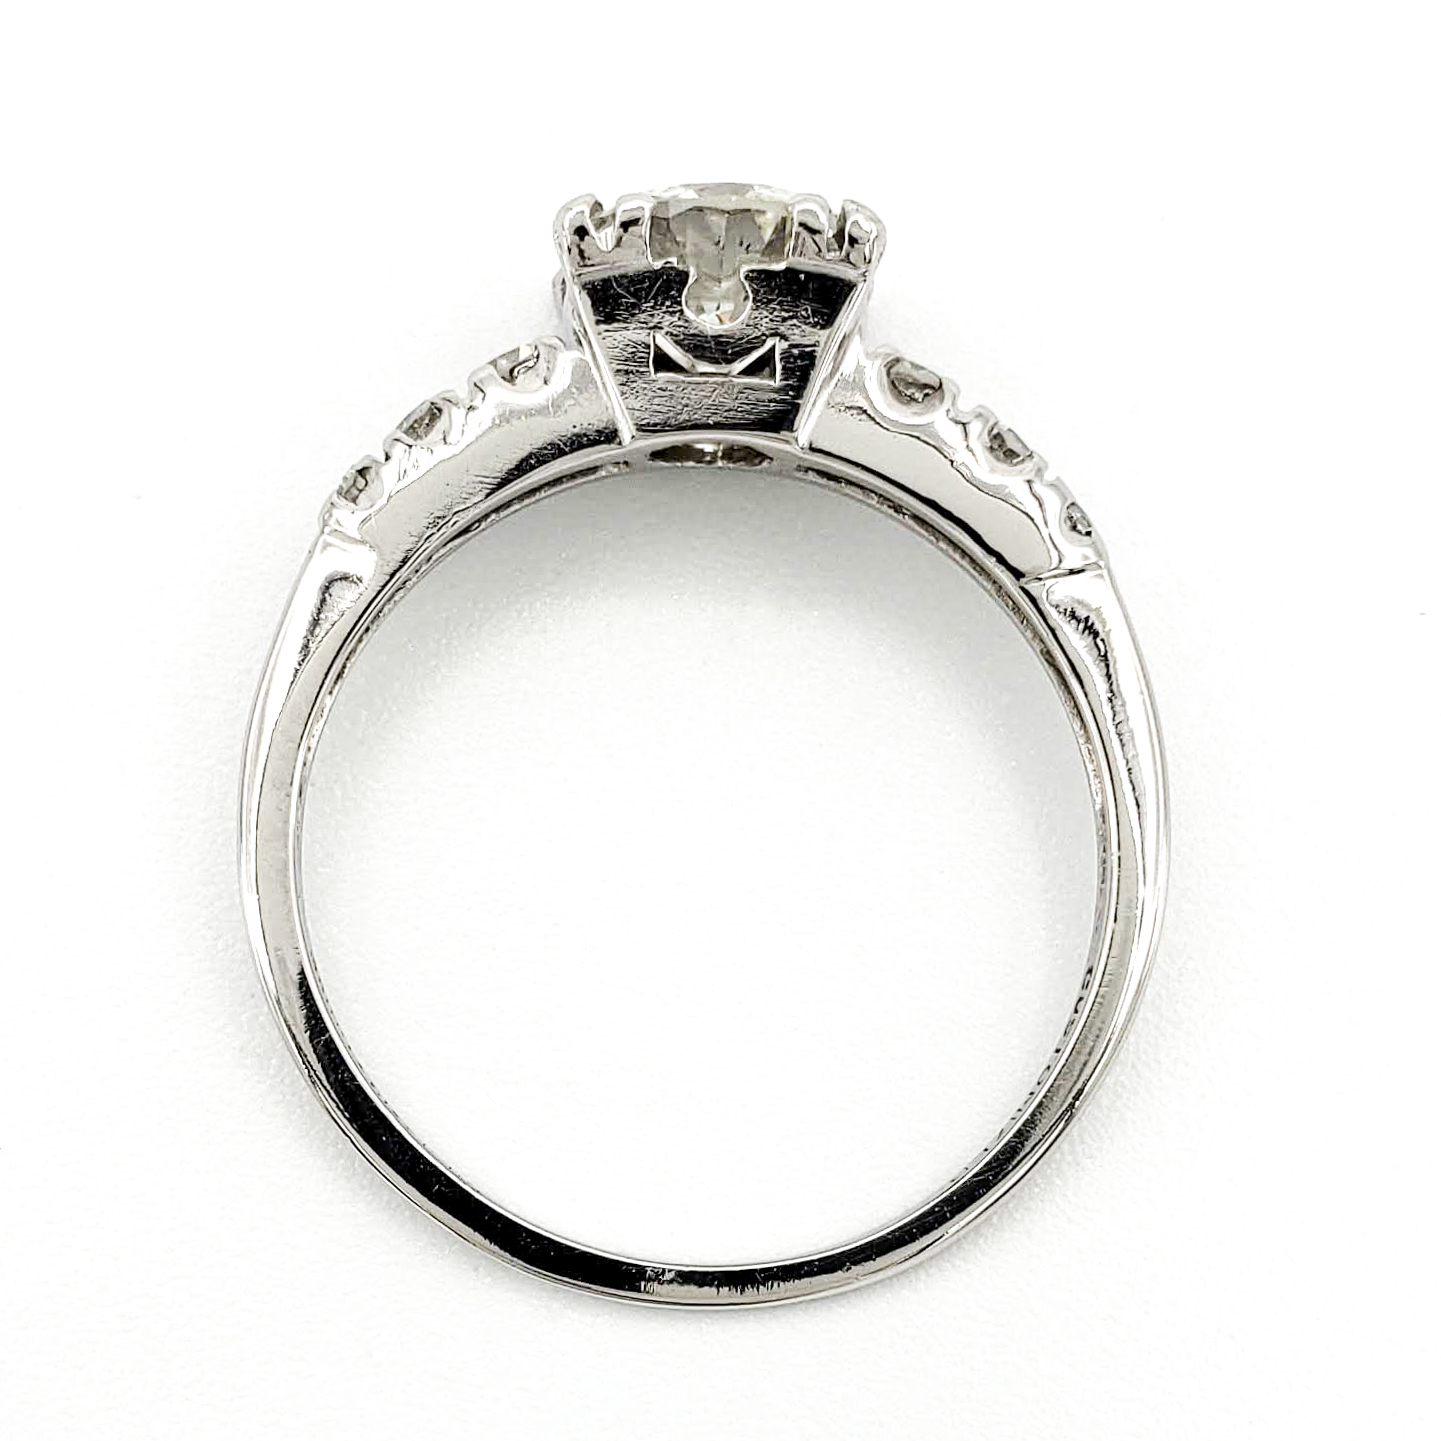 vintage-platinum-engagement-ring-with-0-77-carat-round-brilliant-cut-diamond-egl-i-vs2